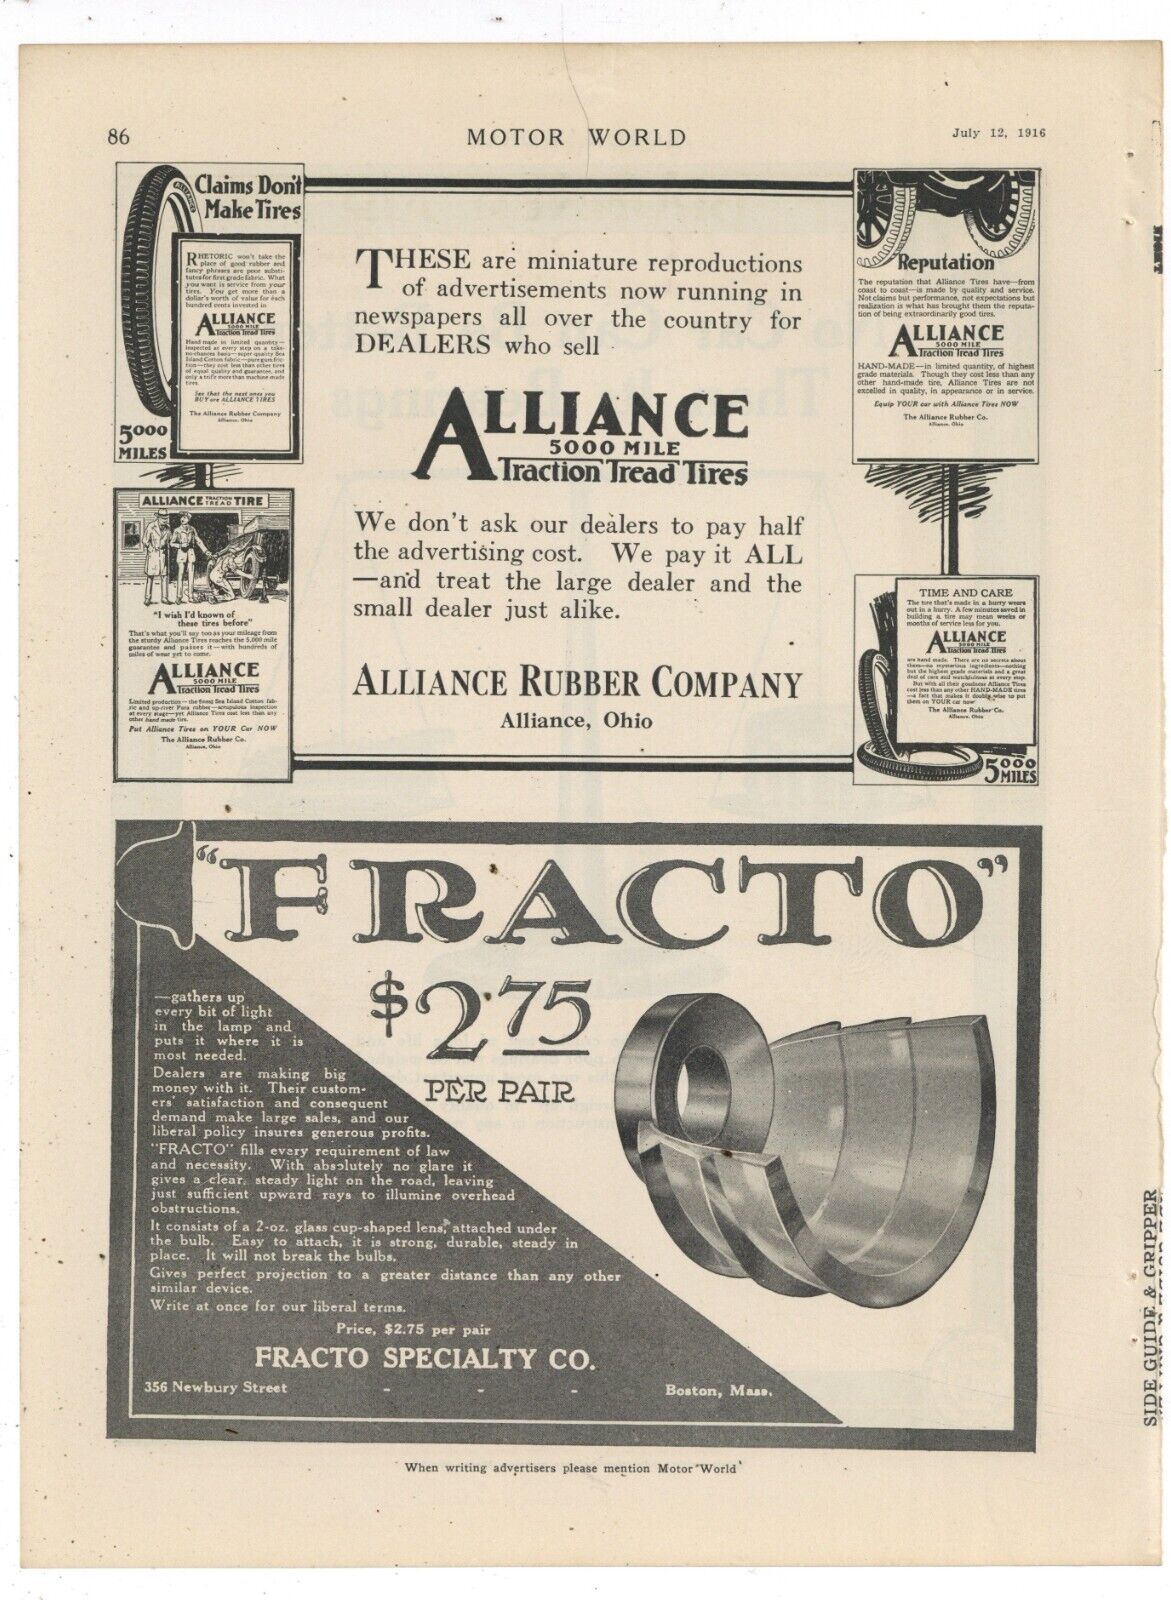 1916 Alliance Rubber Co. Ad: Traction Tread Auto Tires - Alliance, OhiO